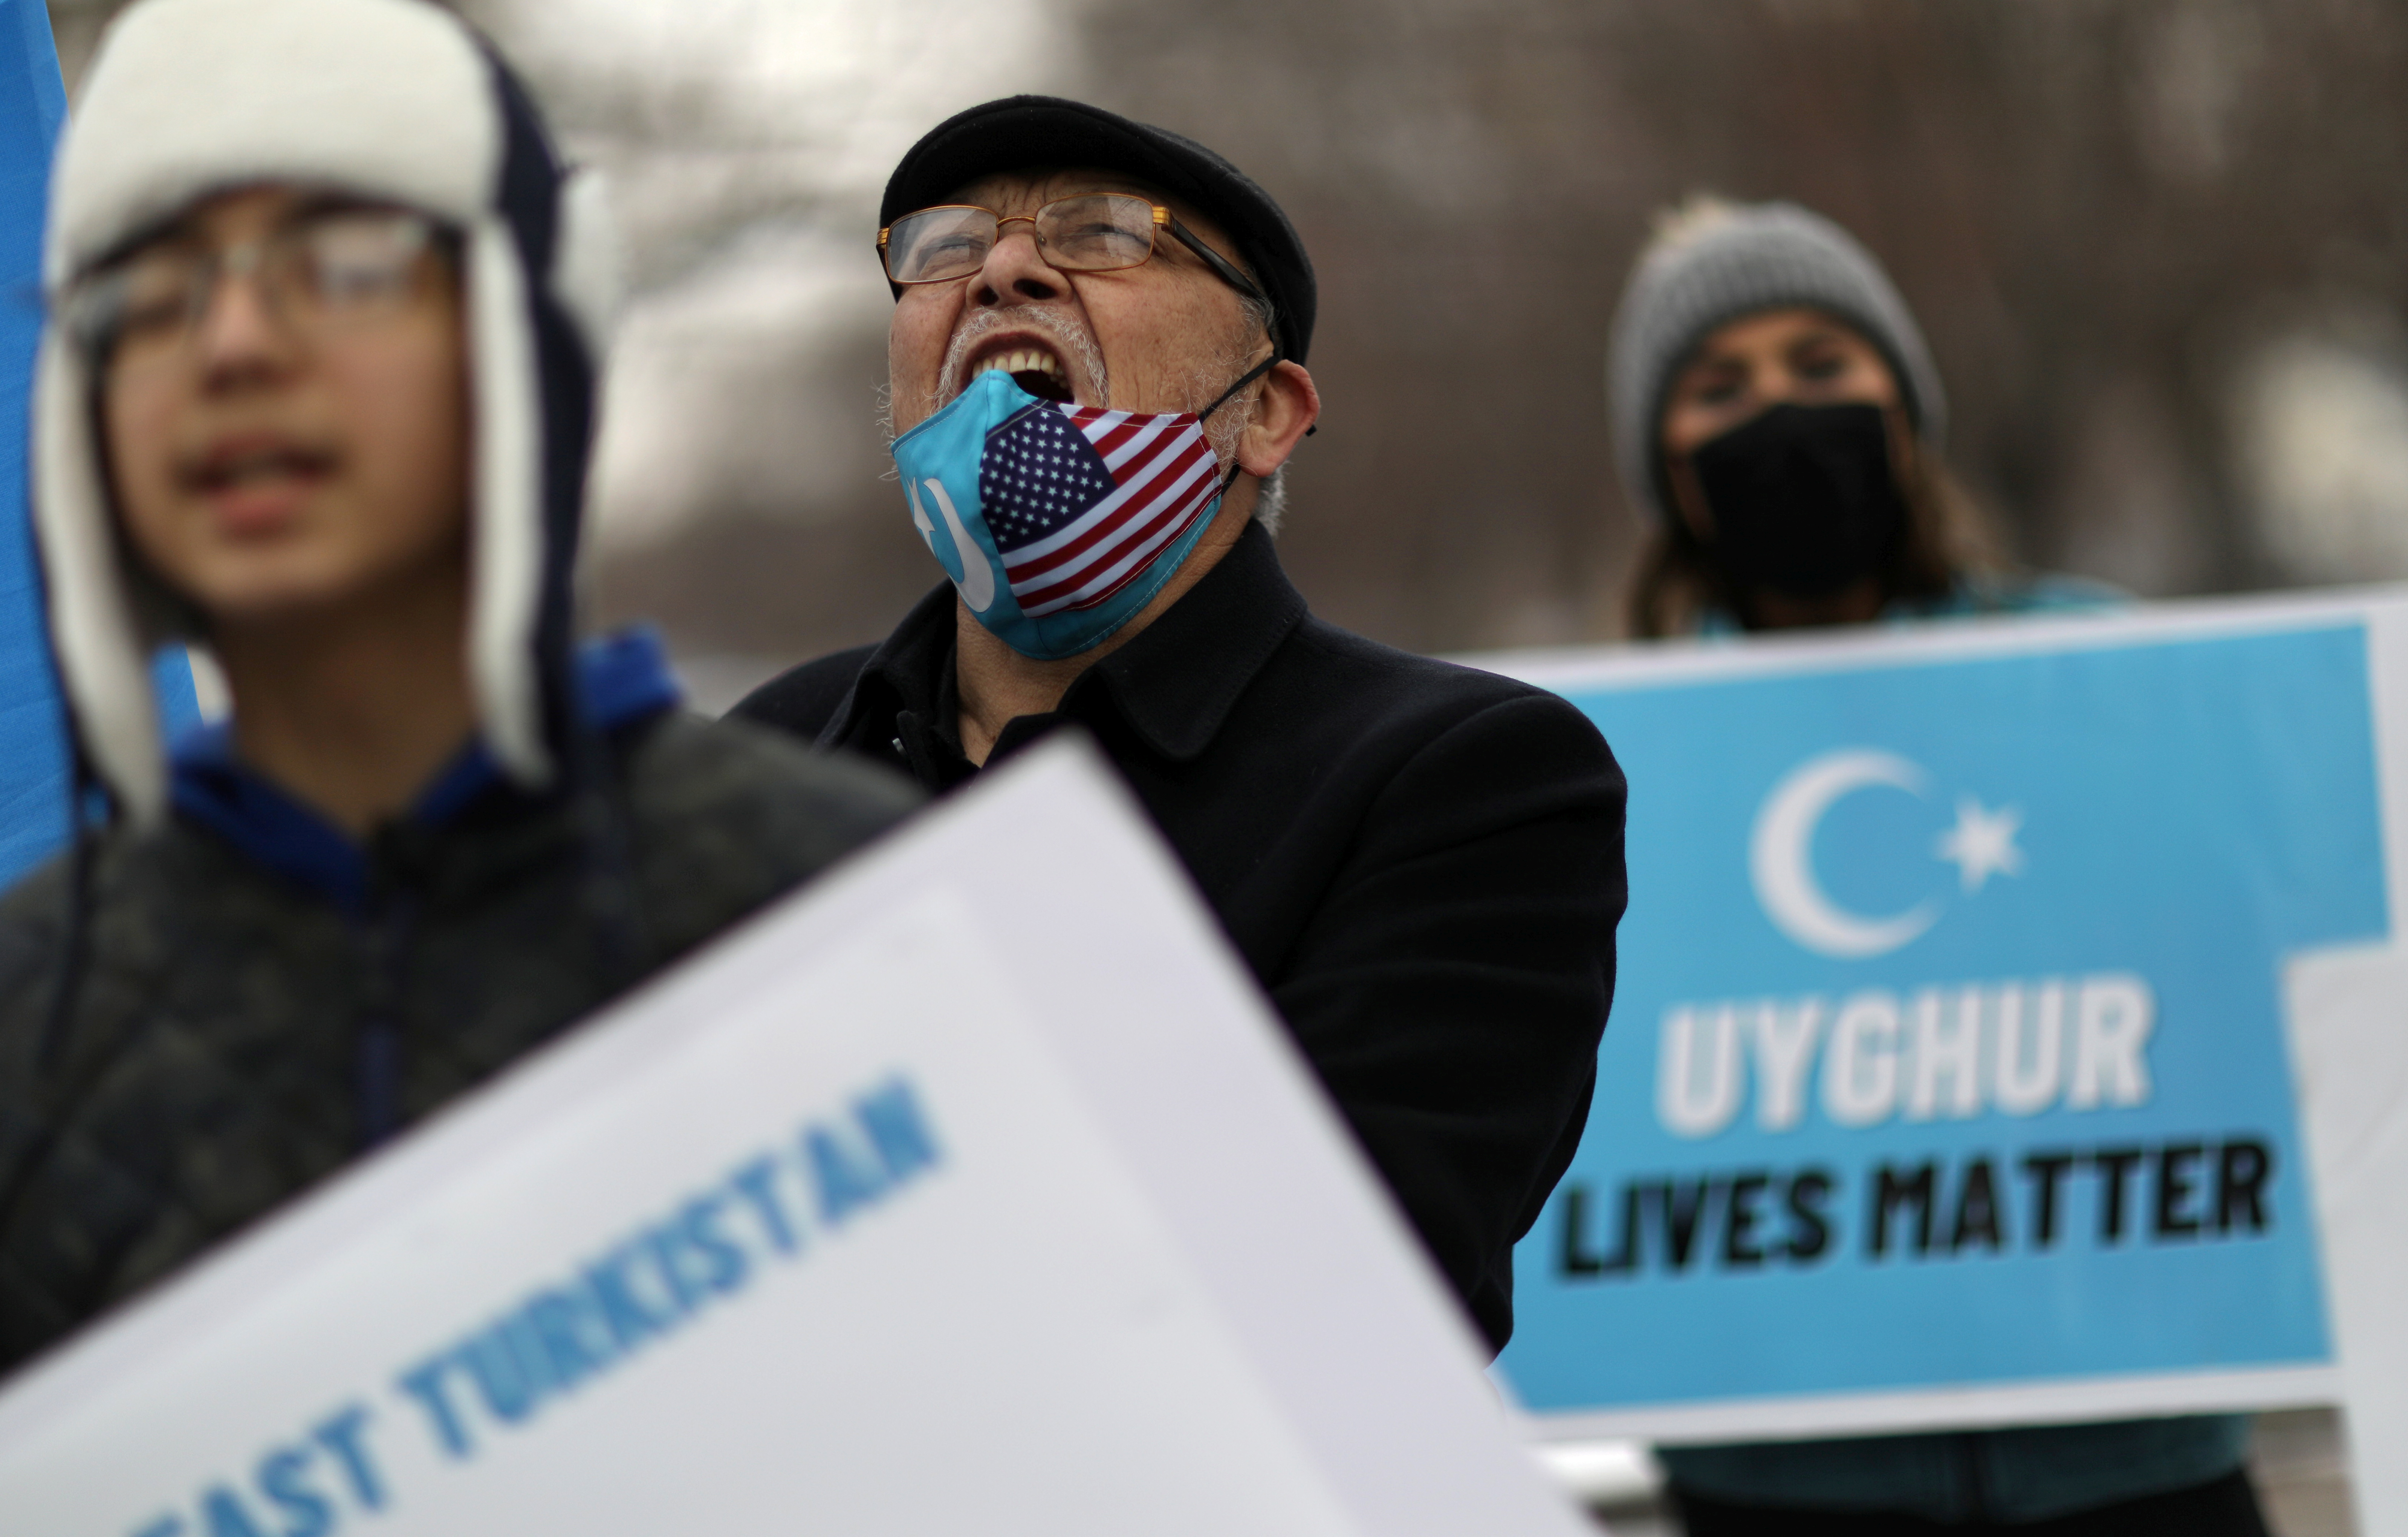 L’organismo delle Nazioni Unite respinge la discussione sul trattamento riservato dalla Cina ai musulmani uiguri, un duro colpo per l’Occidente